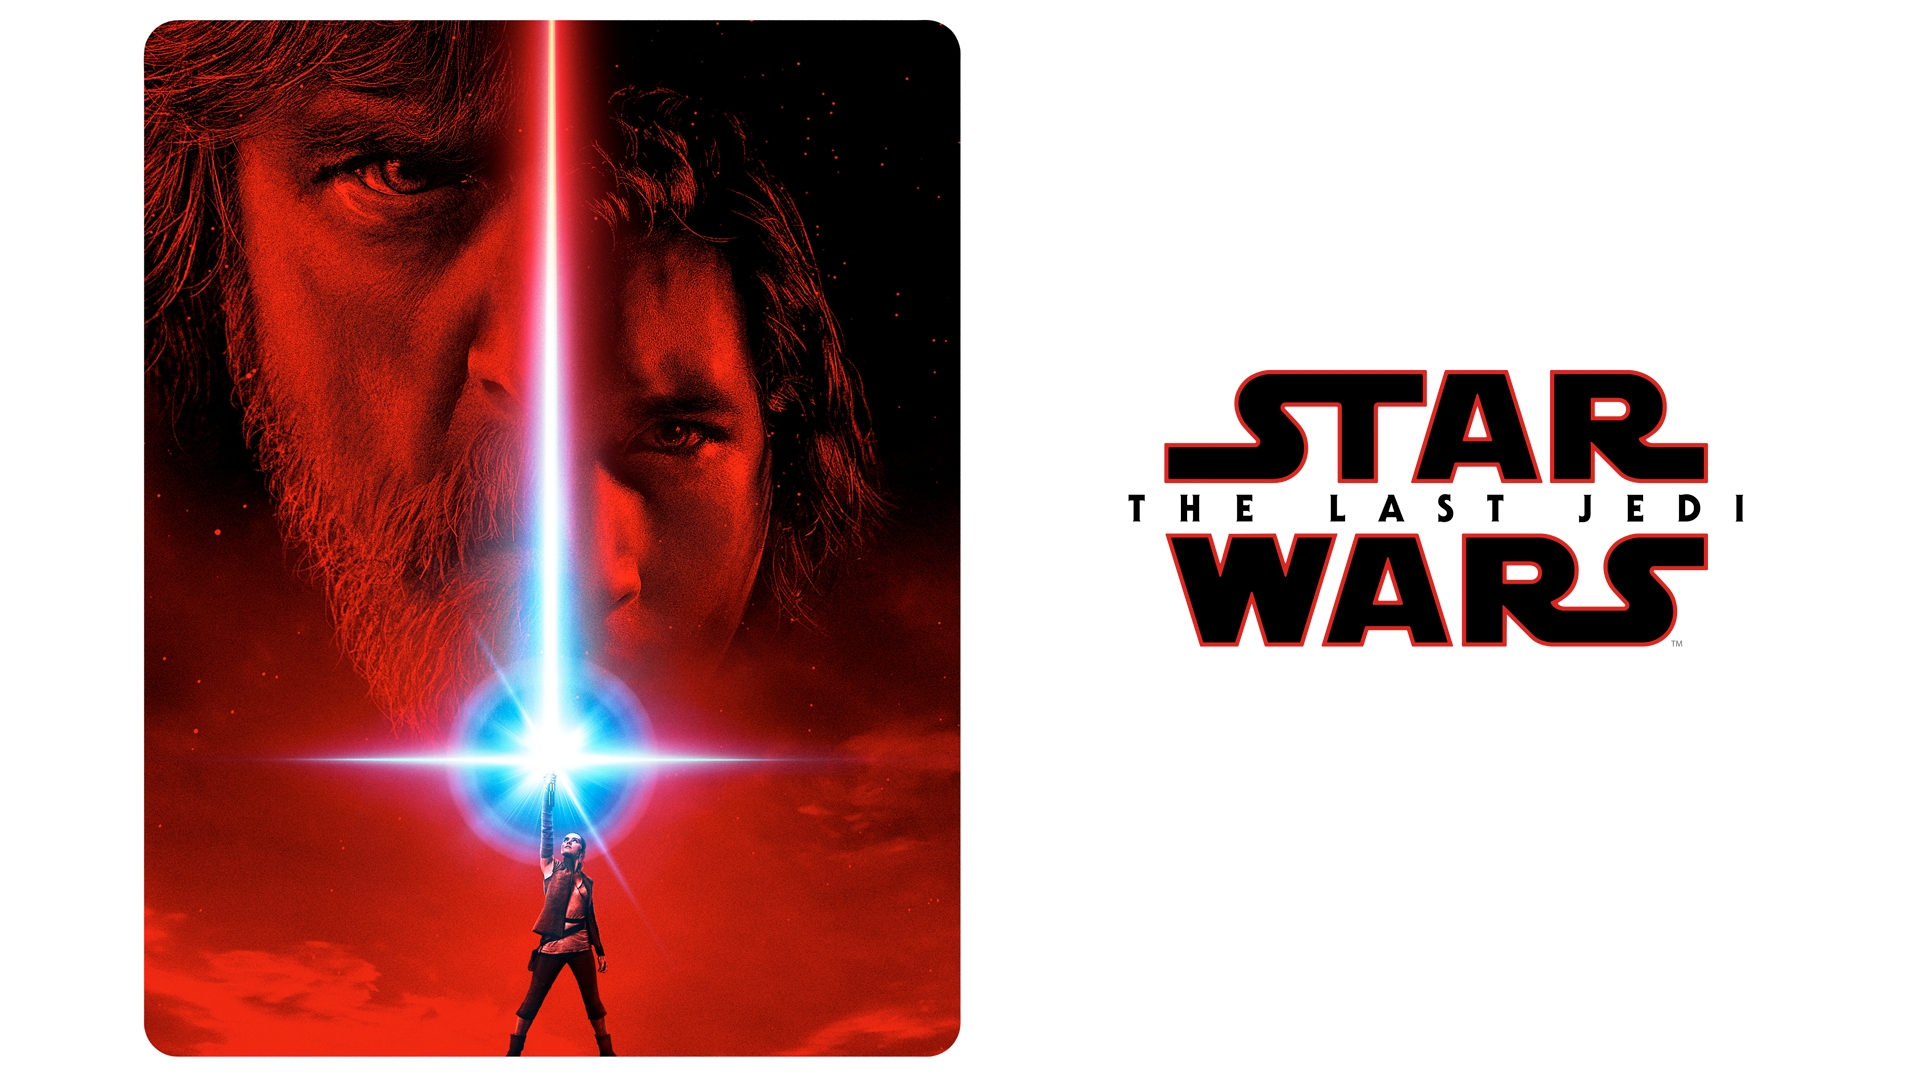 Wallpaper Star Wars: The Last Jedi, 2017 movie, Star wars wallpaper